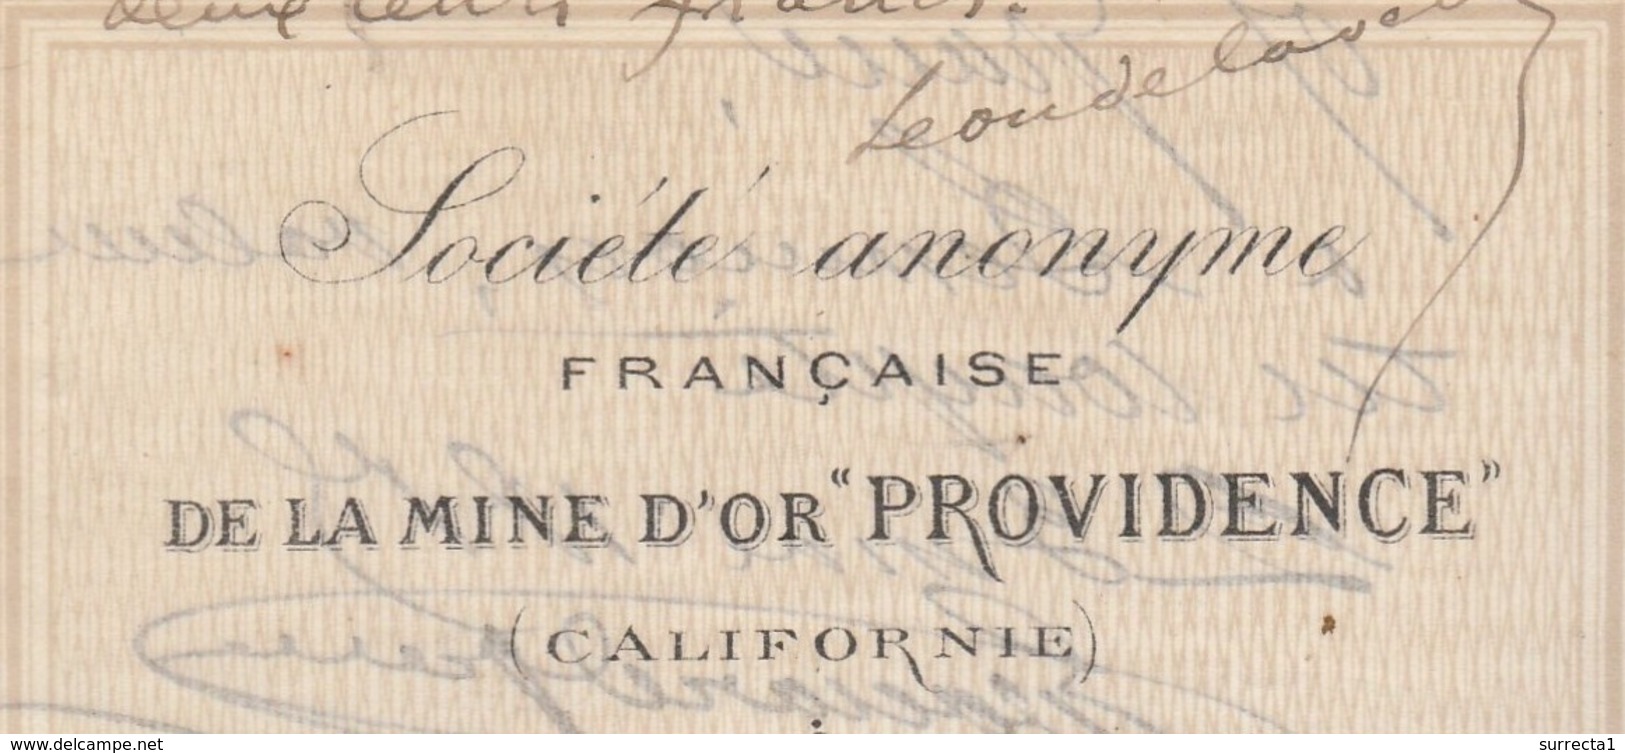 Lettre De Change / Première 1885 / SA Française / Mine D' Or "Providence" / Californie / Amérique / 11 Narbonne Aude - Lettres De Change